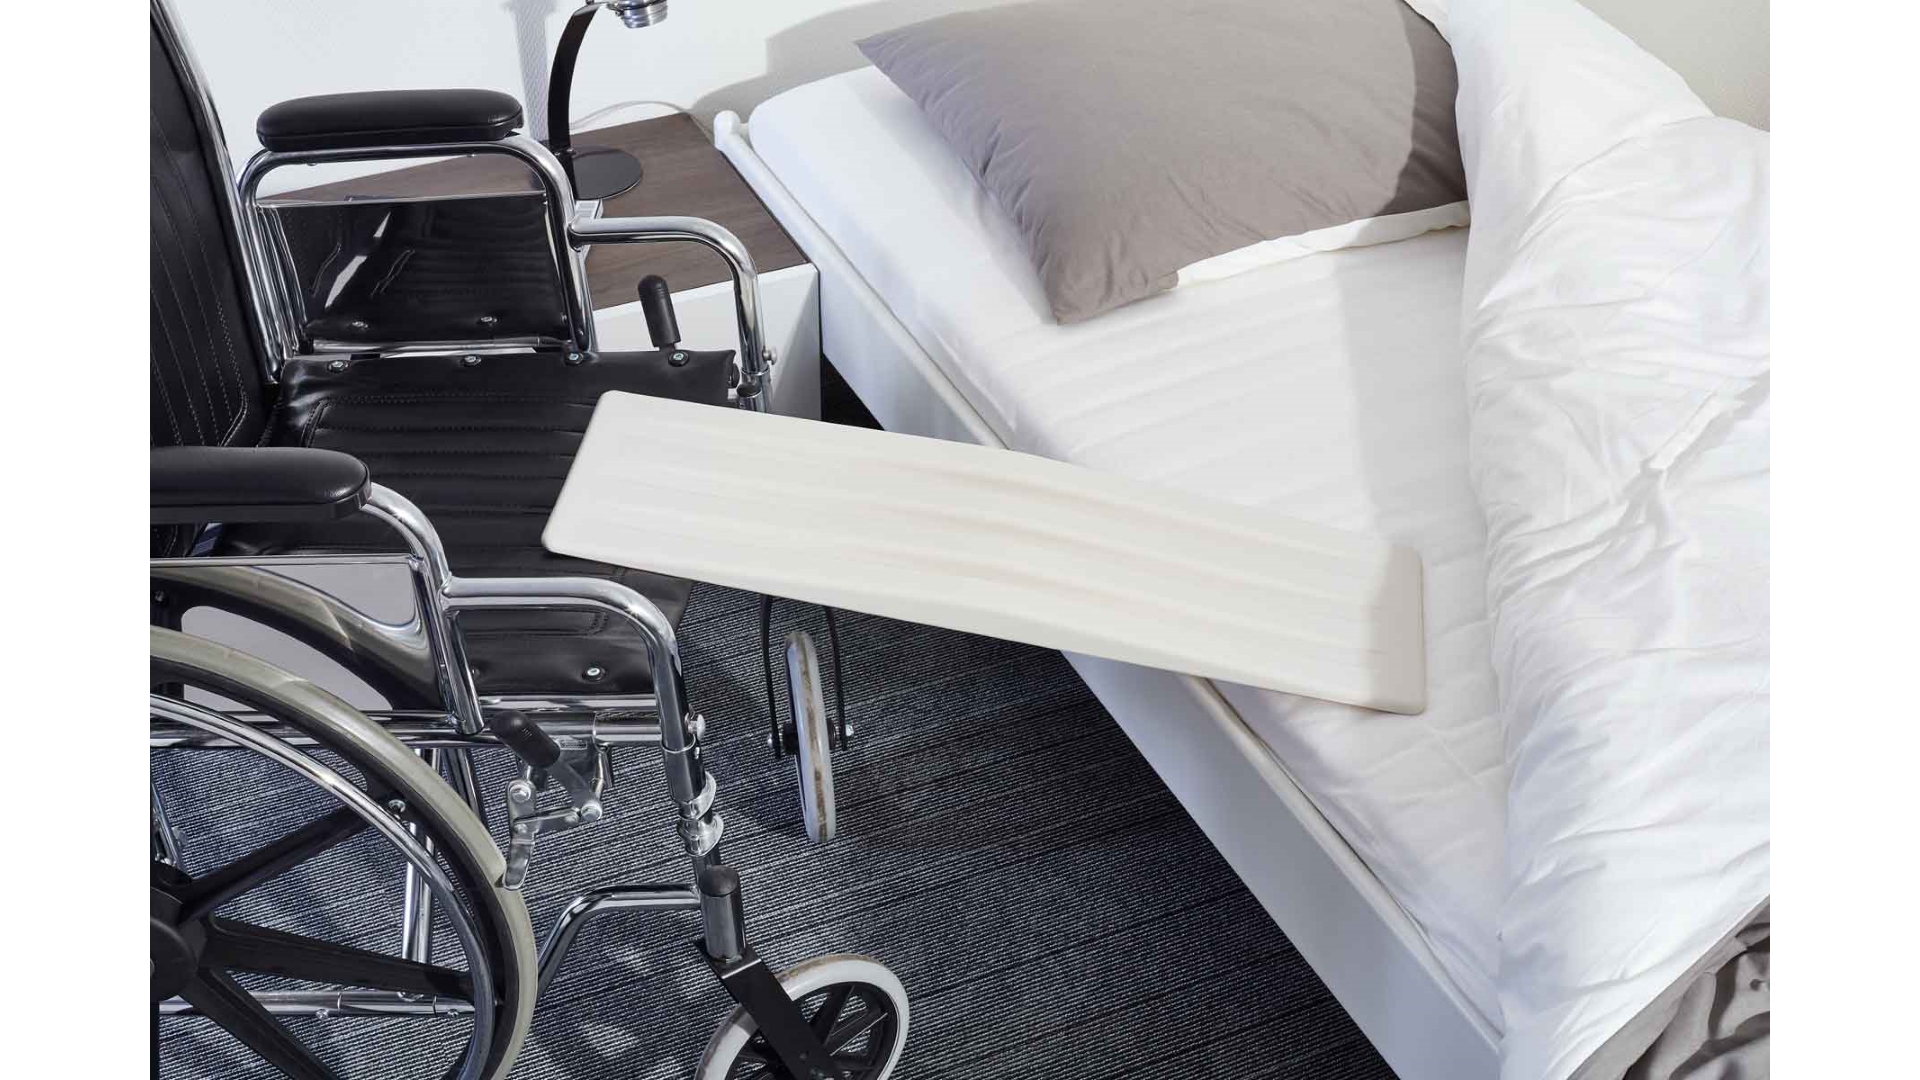 Ein Rutschbrett liegt zwischen Bettkante und Rollstuhl